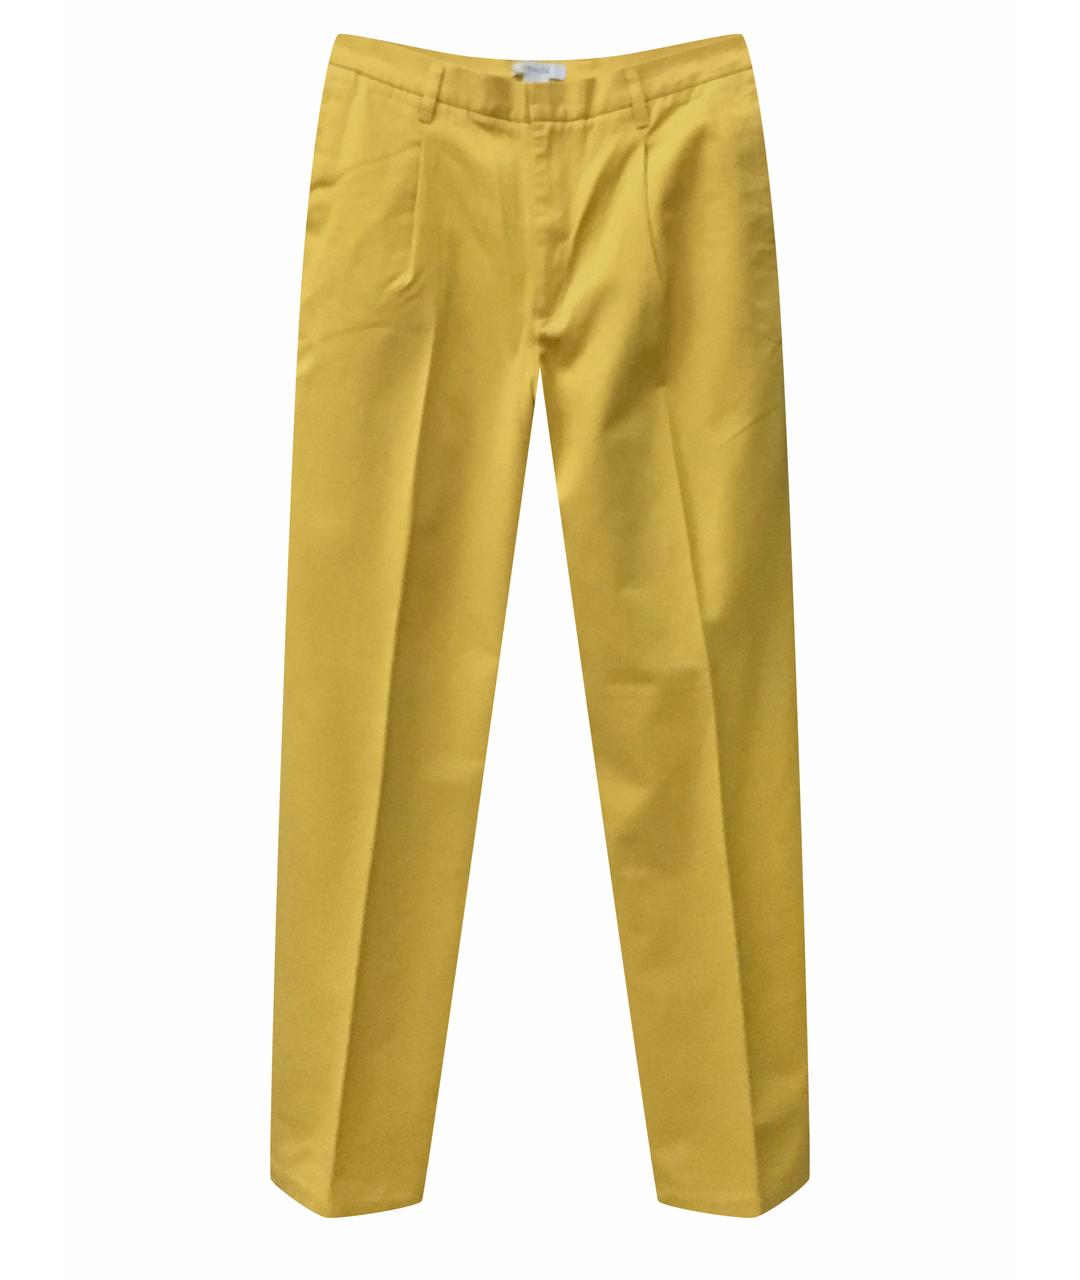 ZEGNA SPORT Желтые хлопковые повседневные брюки, фото 1